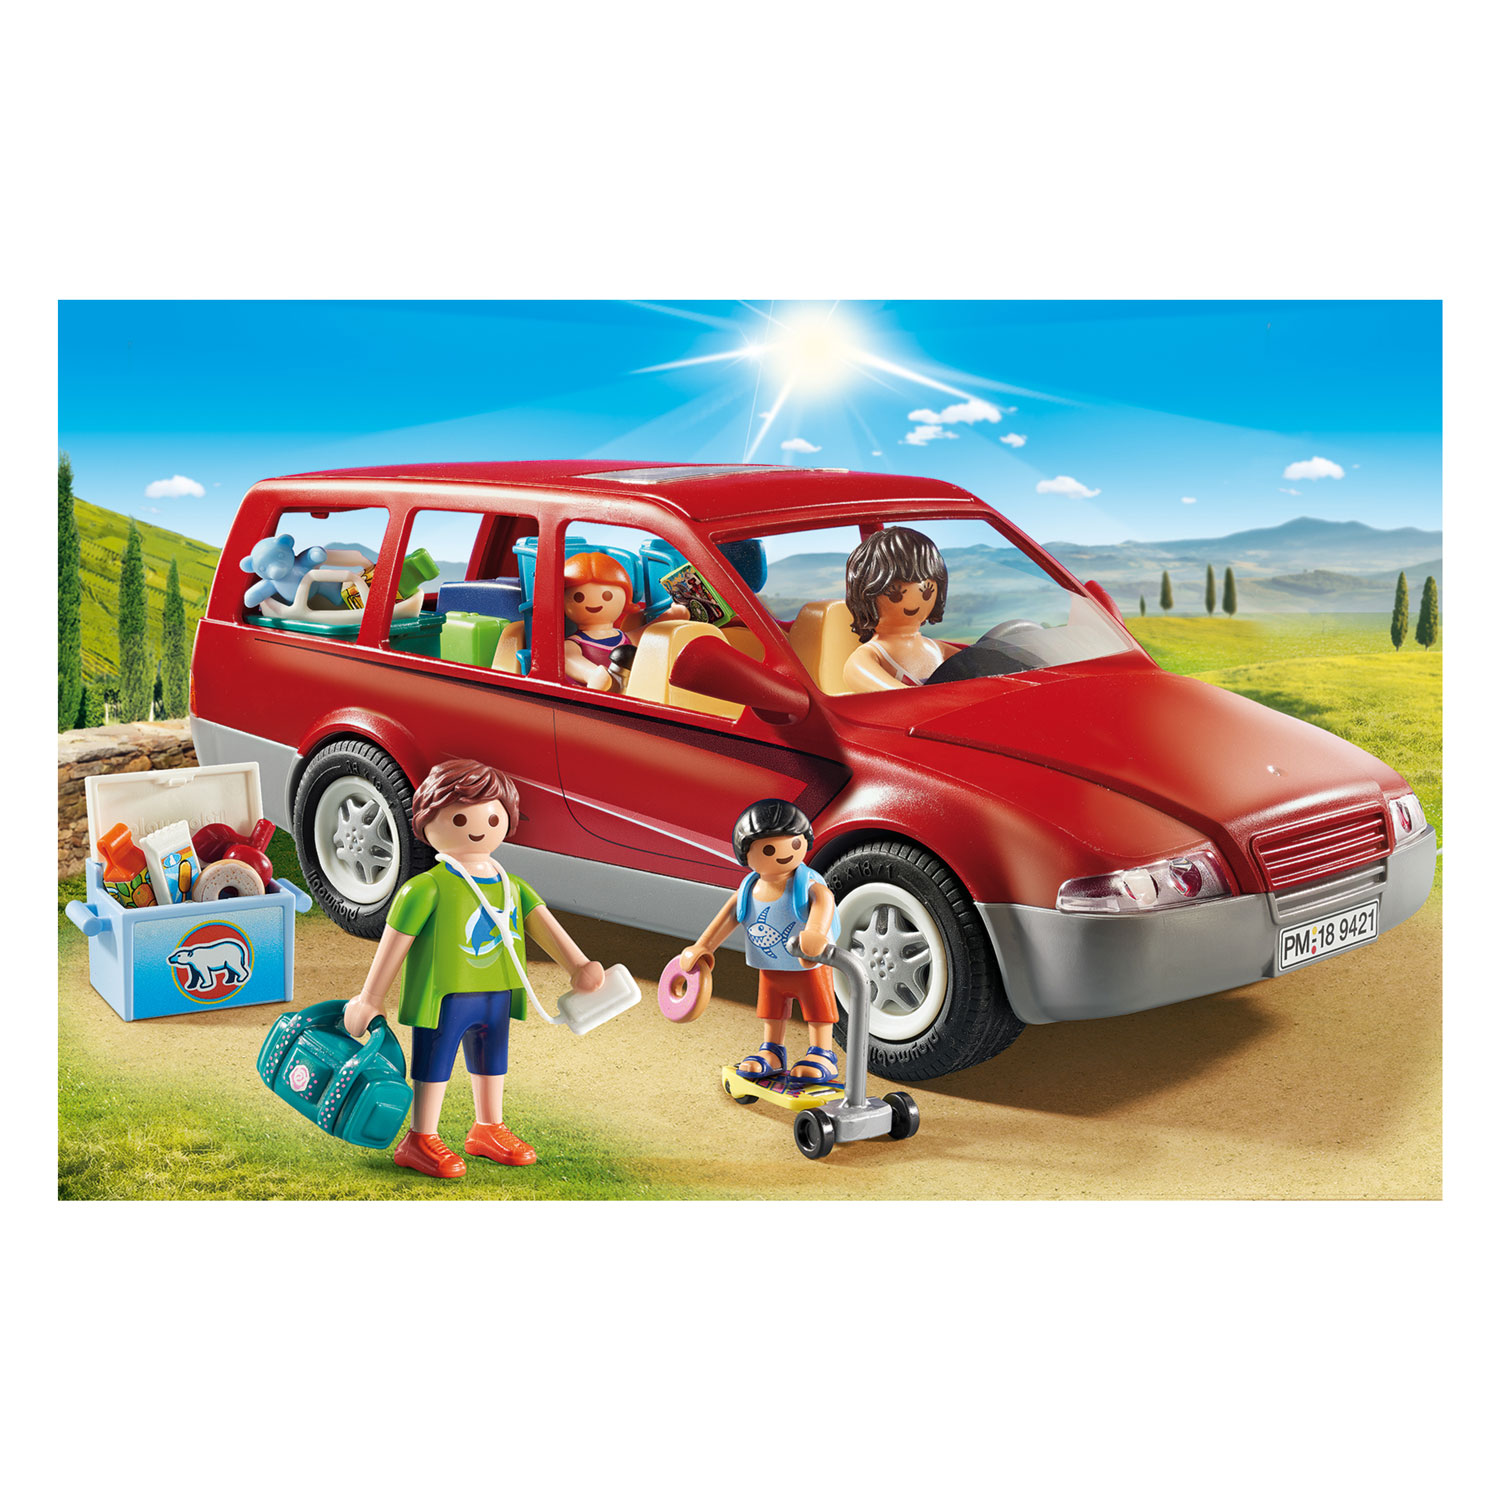 Playmobil 9421 Familienauto